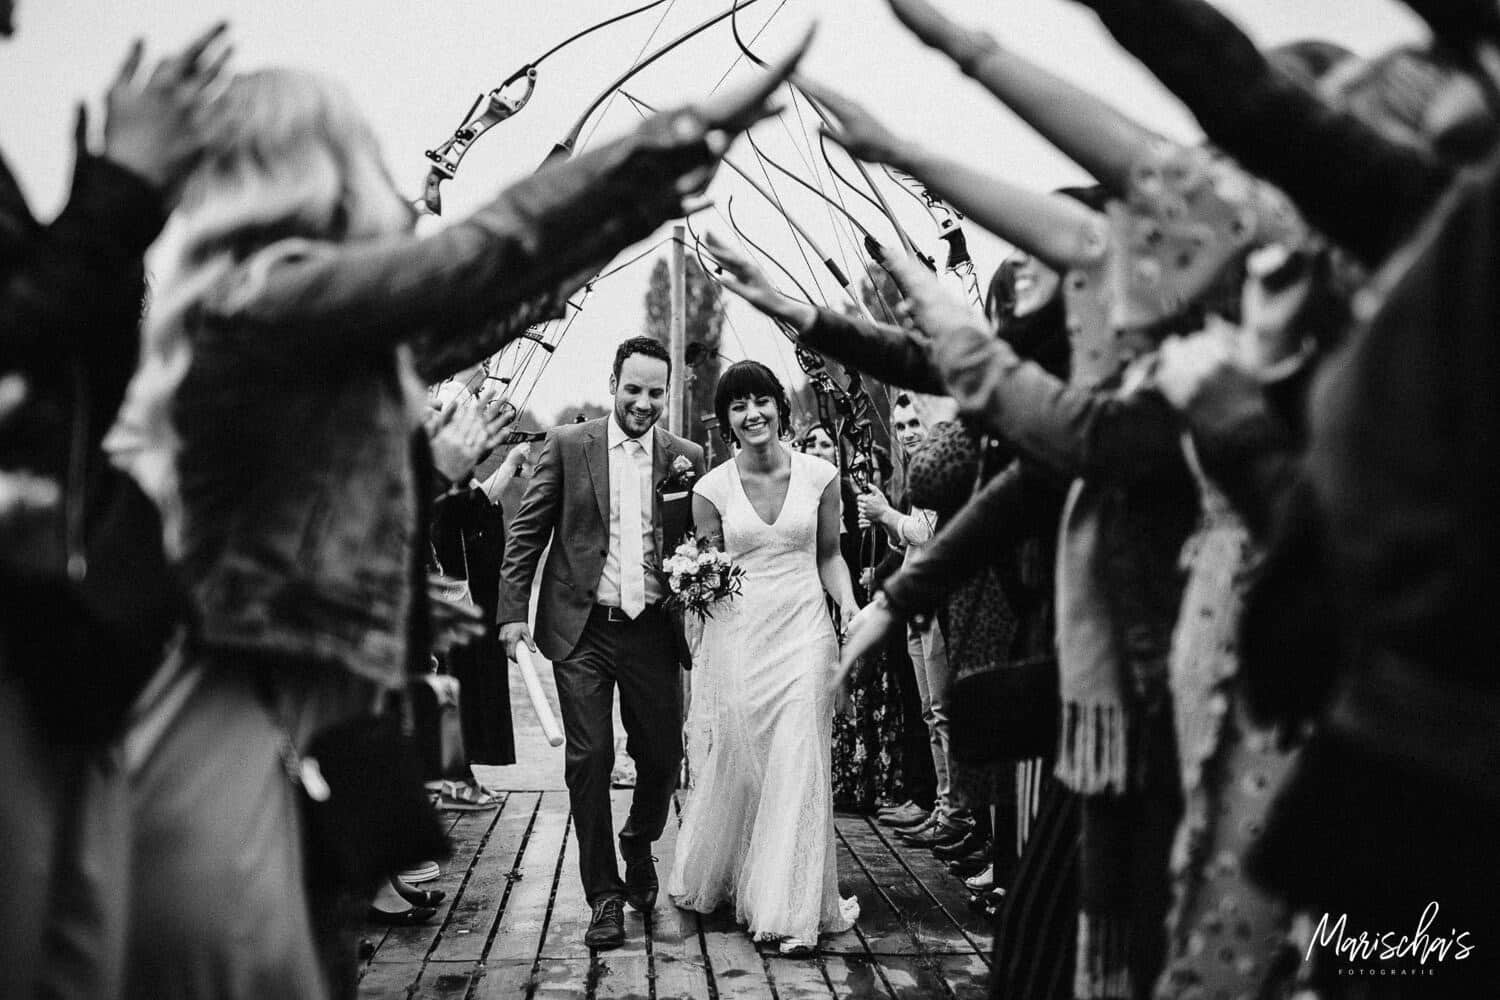 Huwelijksfotograaf voor een huwelijk in regio vlaams brabant